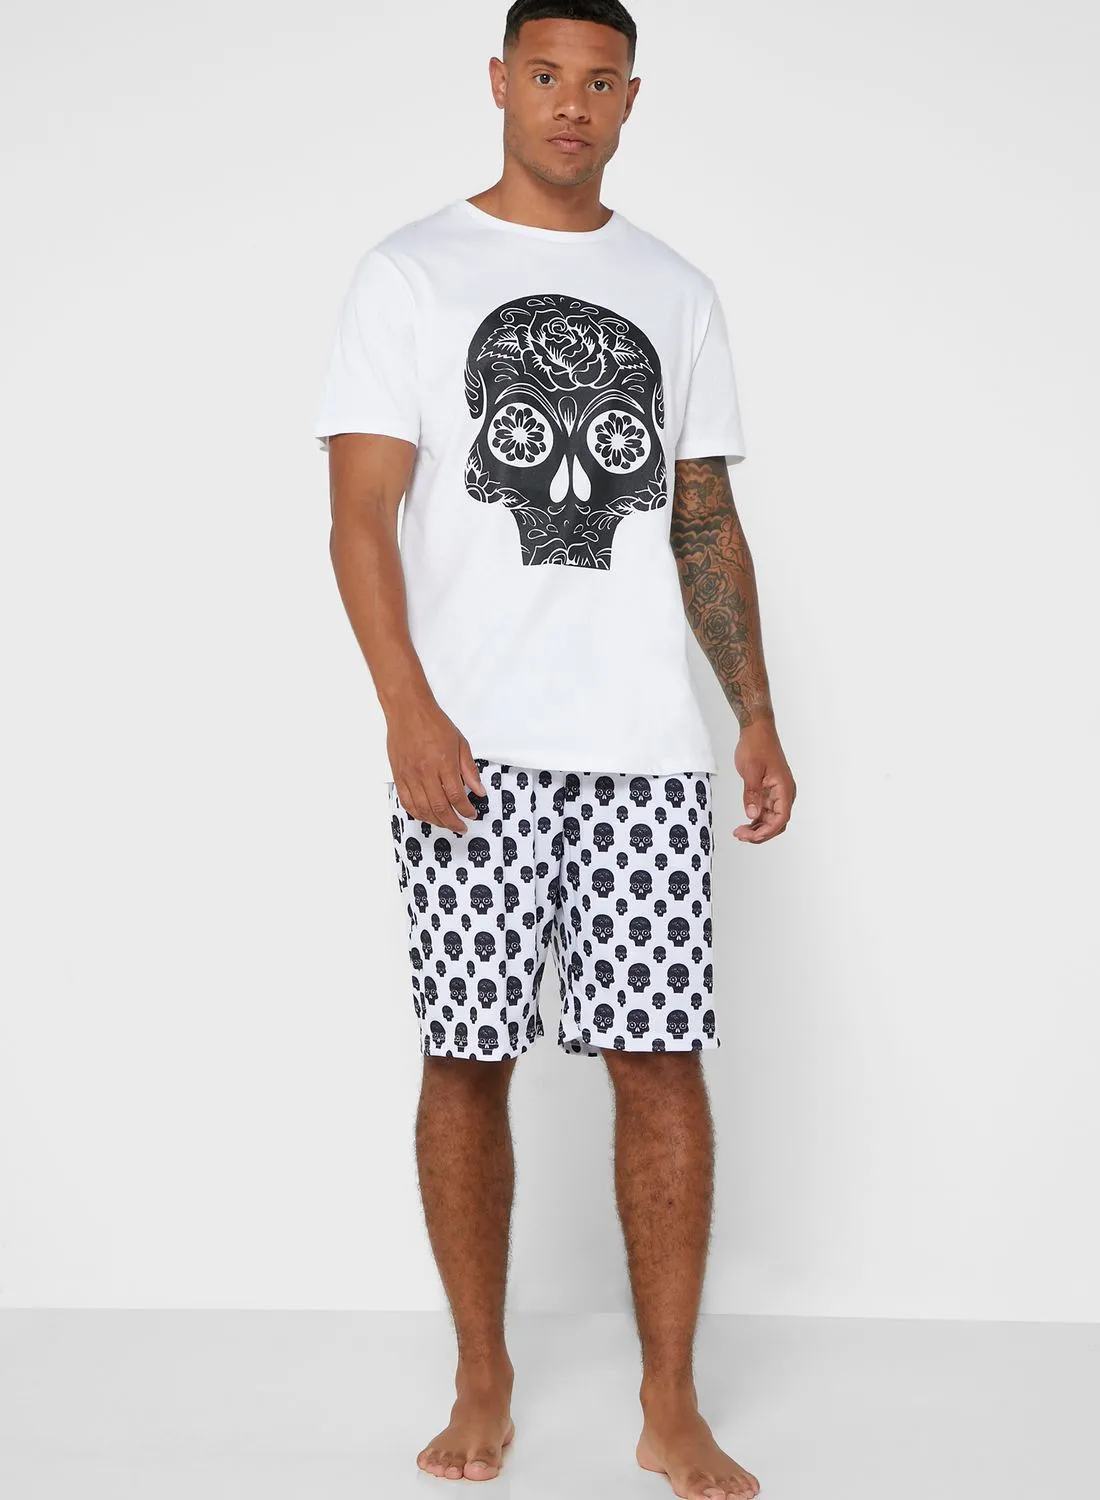 Seventy Five Skull Printed Shorts and T-Shirt Set